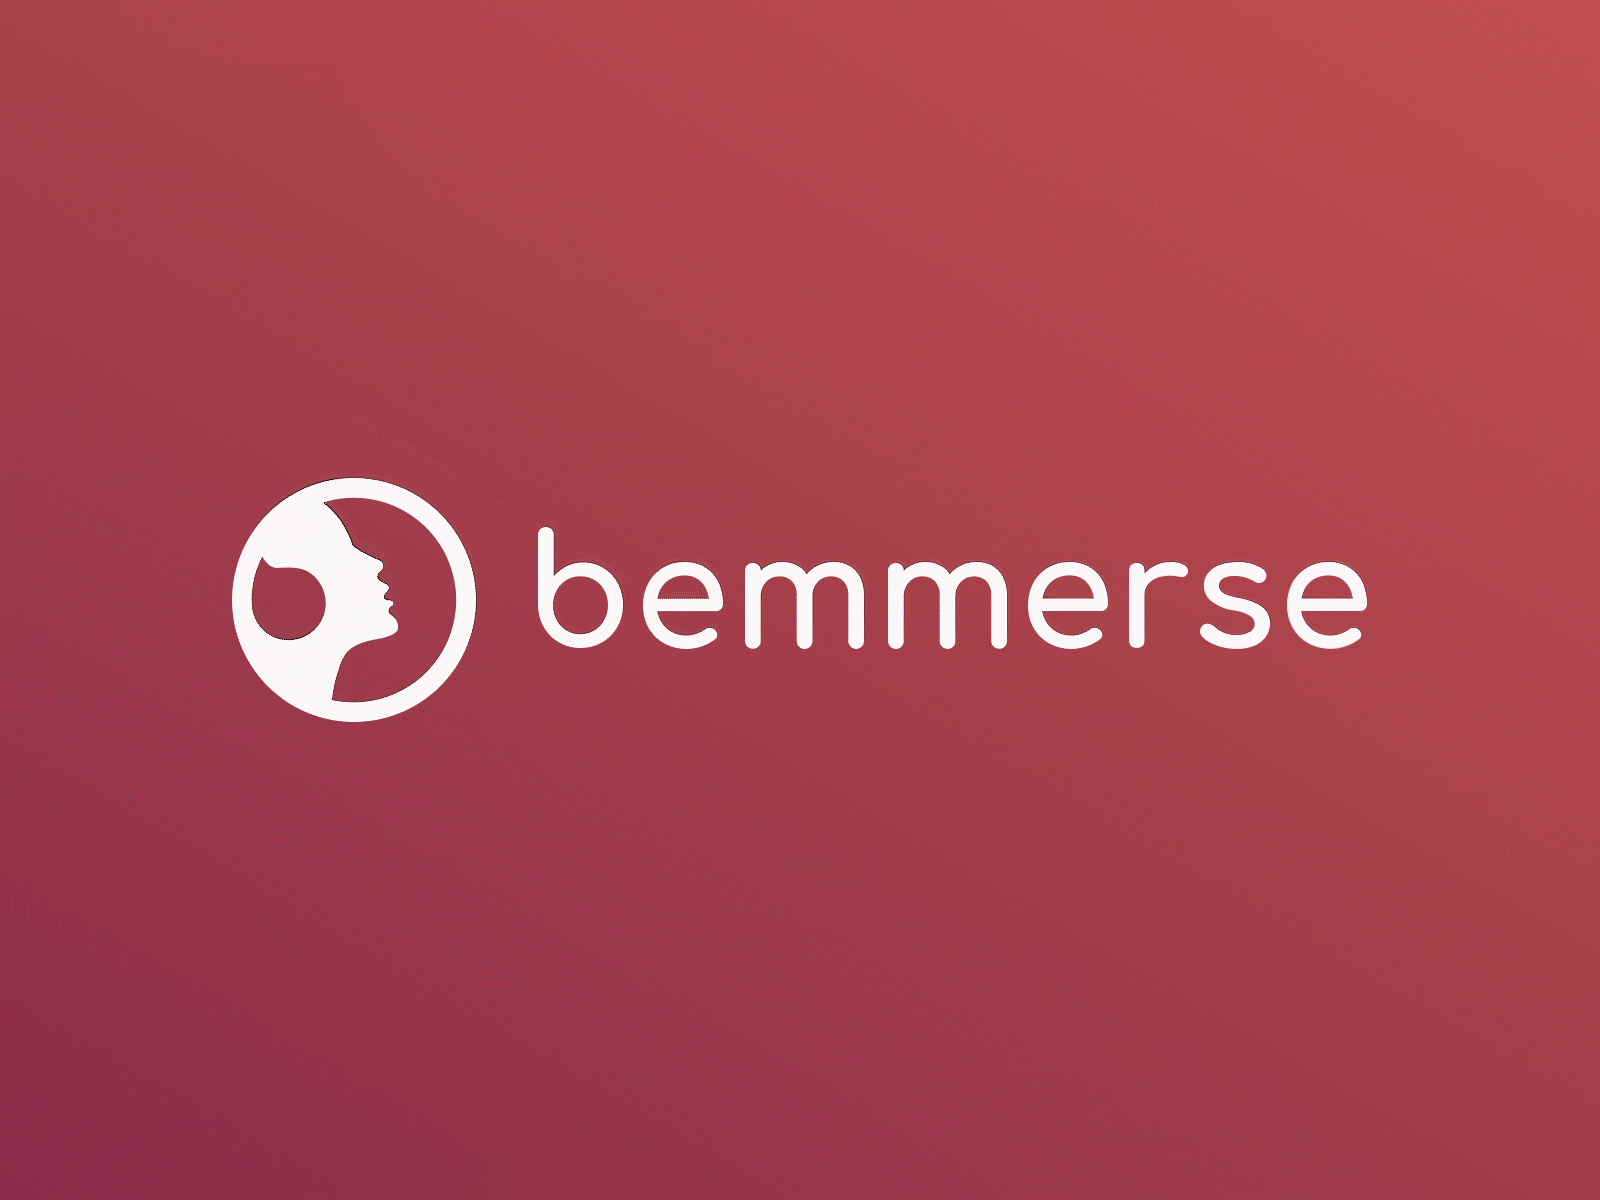 Bemmerse branding asmr branding design face headphones icon logo logo design logo design branding logotype profile rebrand relaxation relaxation app startup